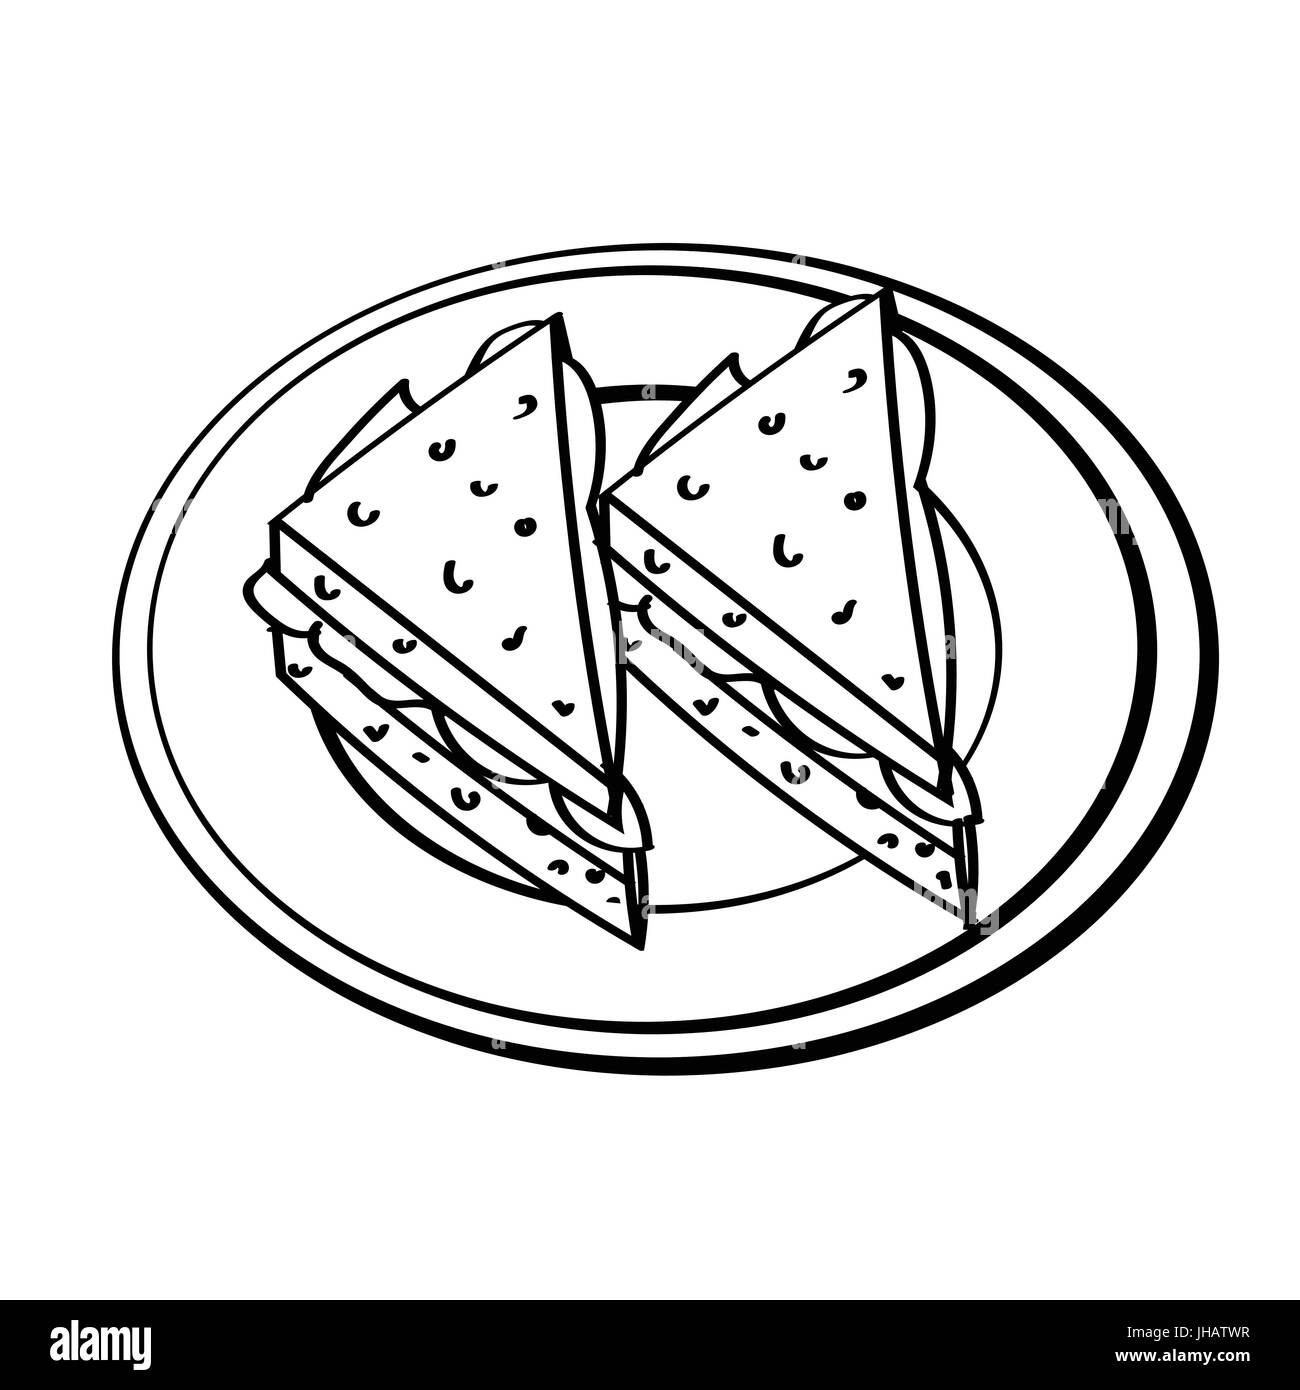 Hand gezeichnete Skizze des Sandwiches in Schale, isoliert, schwarz / weiß-Cartoon-Vektor-Illustration für Coloring Book - Linie gezeichnet Vektor Stock Vektor